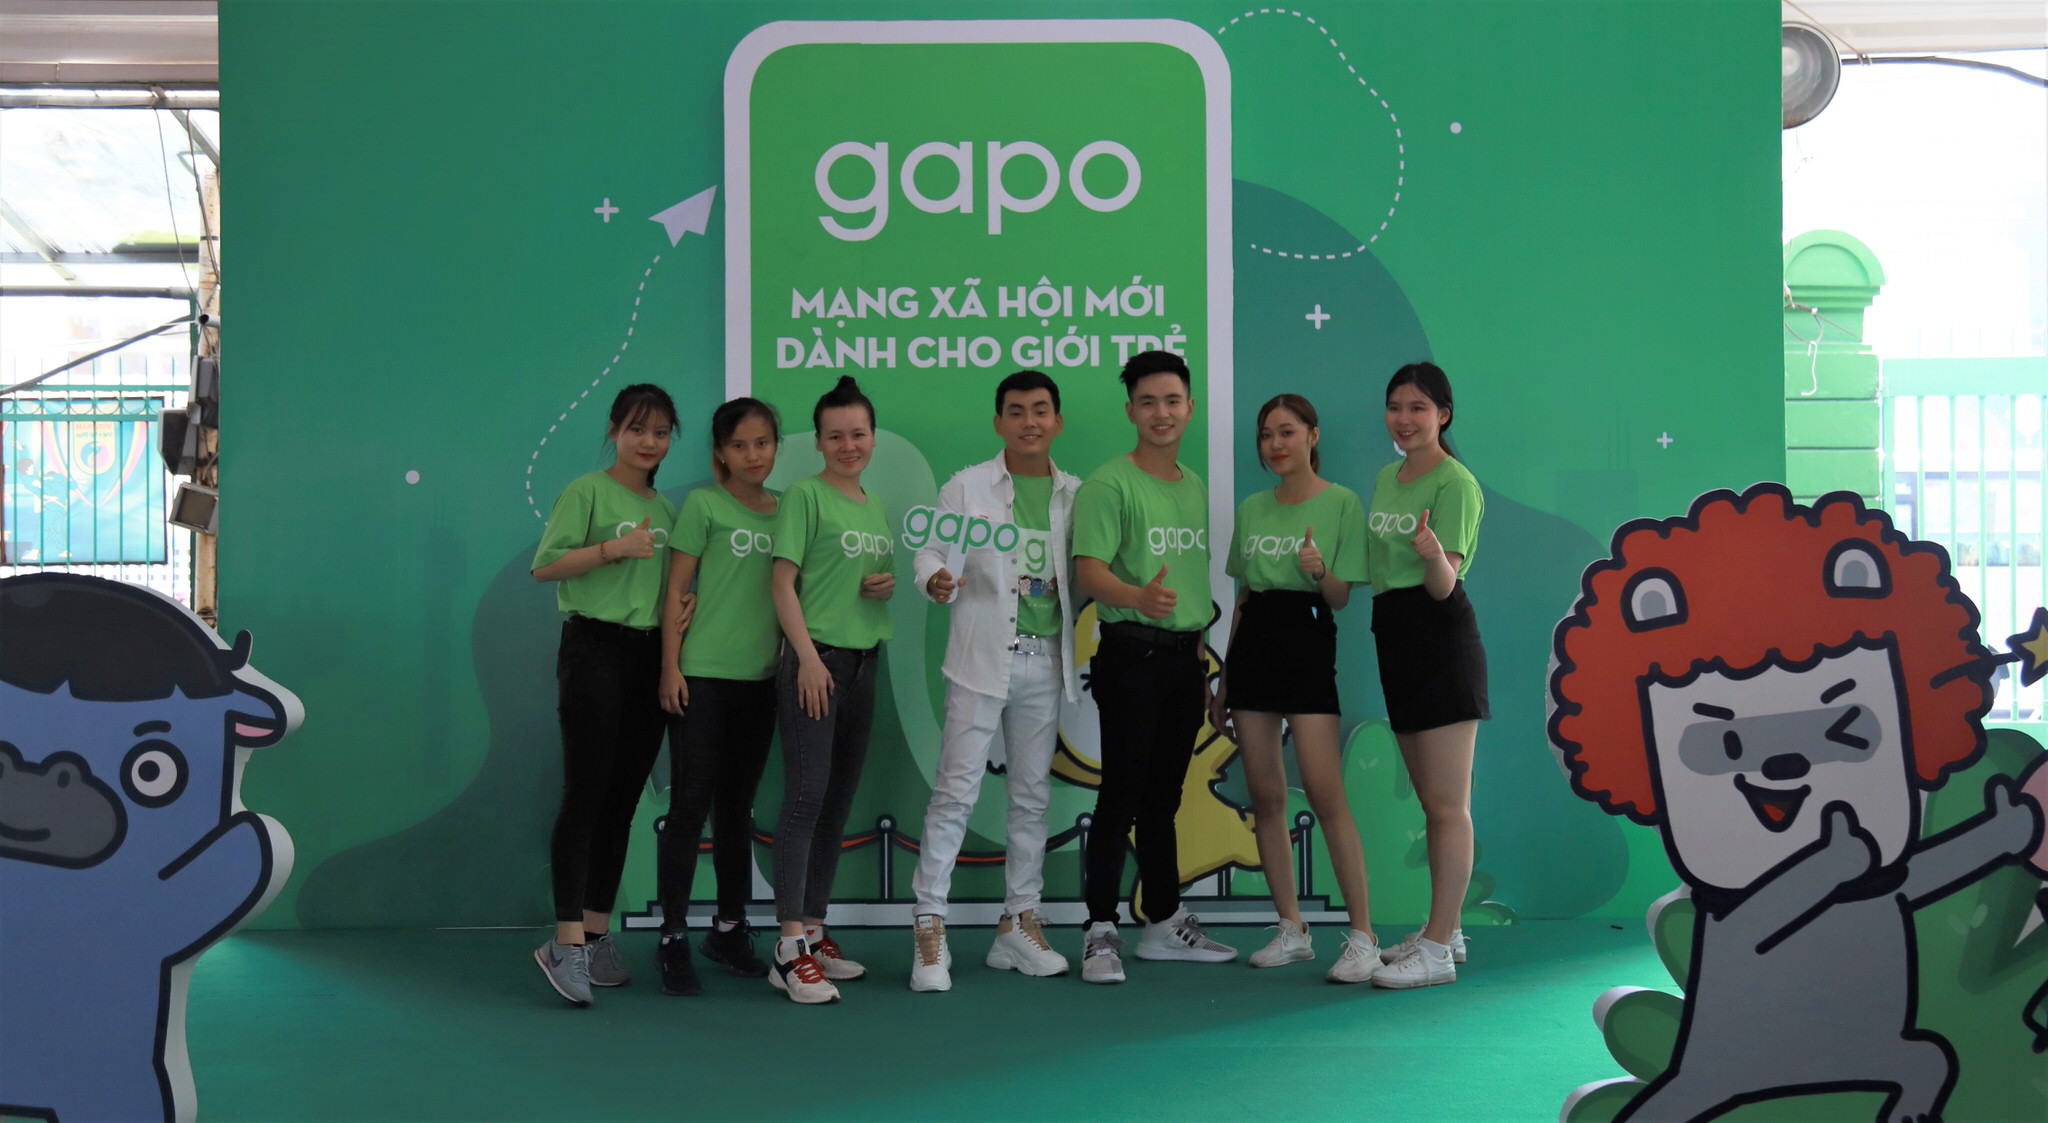 Bắt tay Gapo, Đại hội 360mobi thu hút hơn 70,000 lượt game thủ xếp hàng nhận “đặc quyền kép” từ Gapo